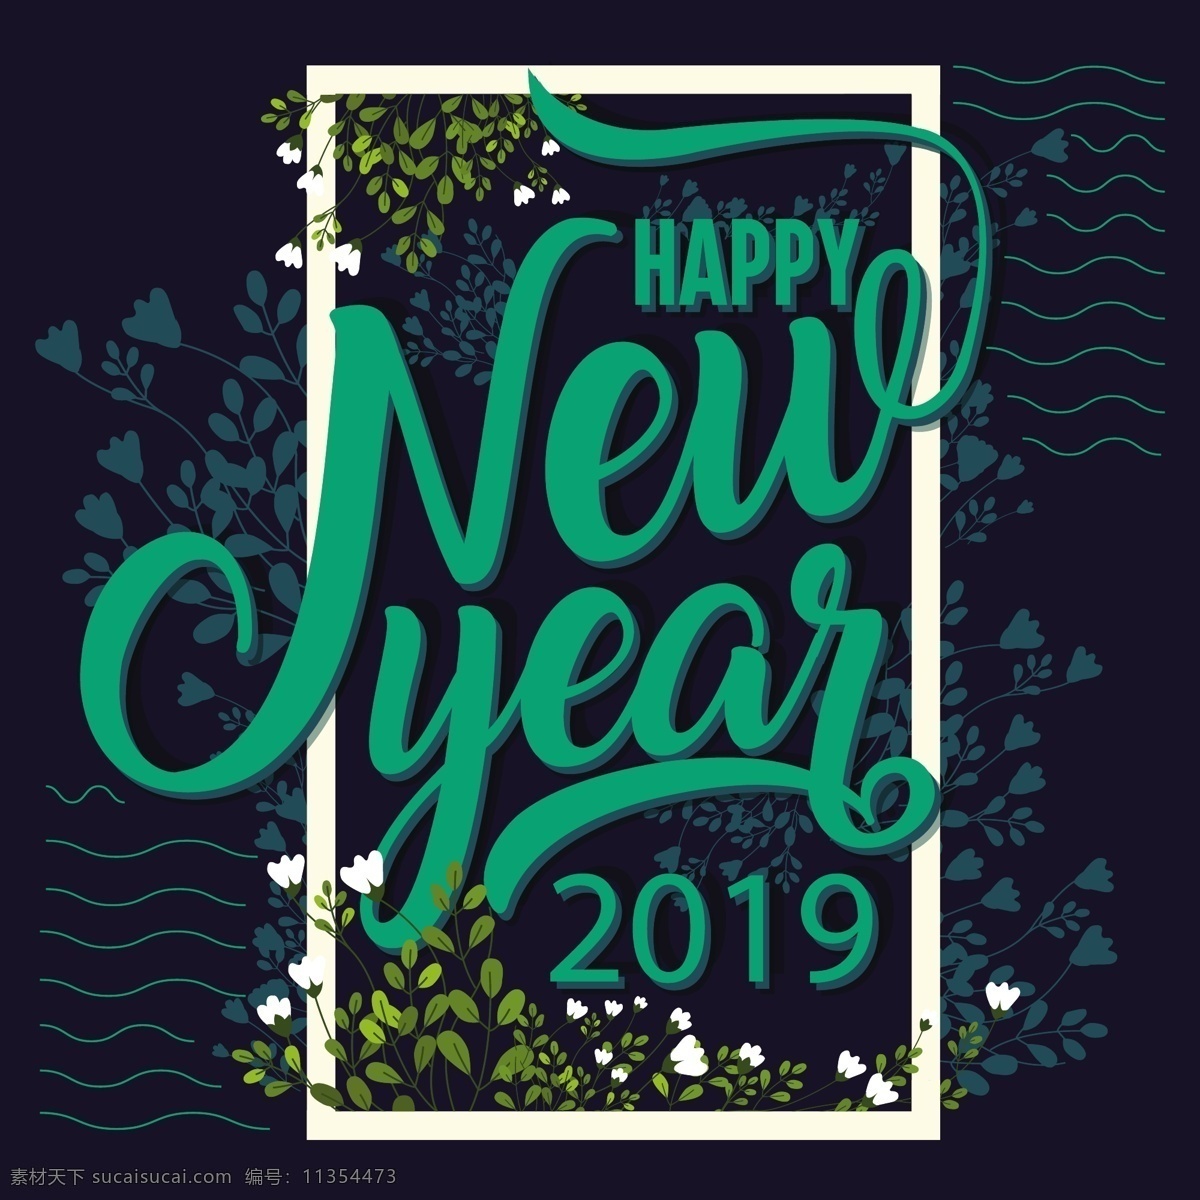 新年 快乐 英文 字体 背景 矢量 花纹 字体设计 新年快乐 矢量素材 花 2019 新年字体设计